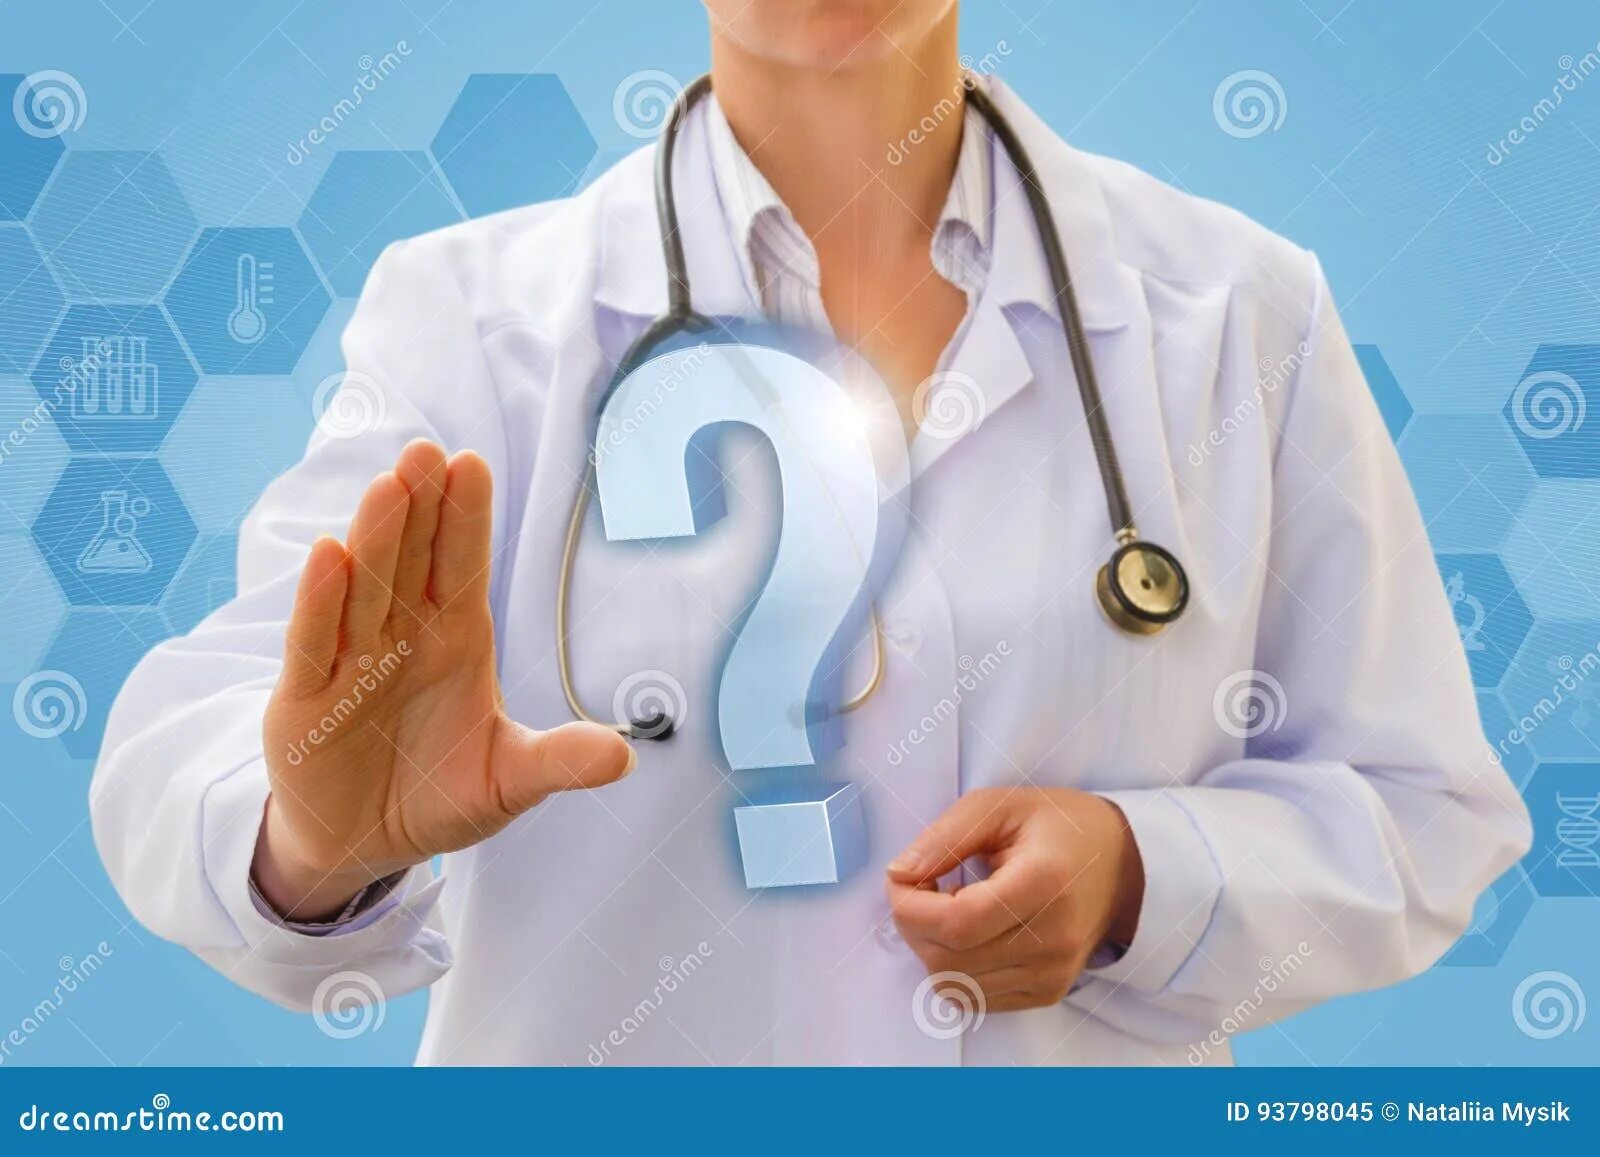 Врачи быстрый ответ. Вопрос врачу. Врач и знак вопроса. Вопросы медикам. Врач с вопросительным знаком.